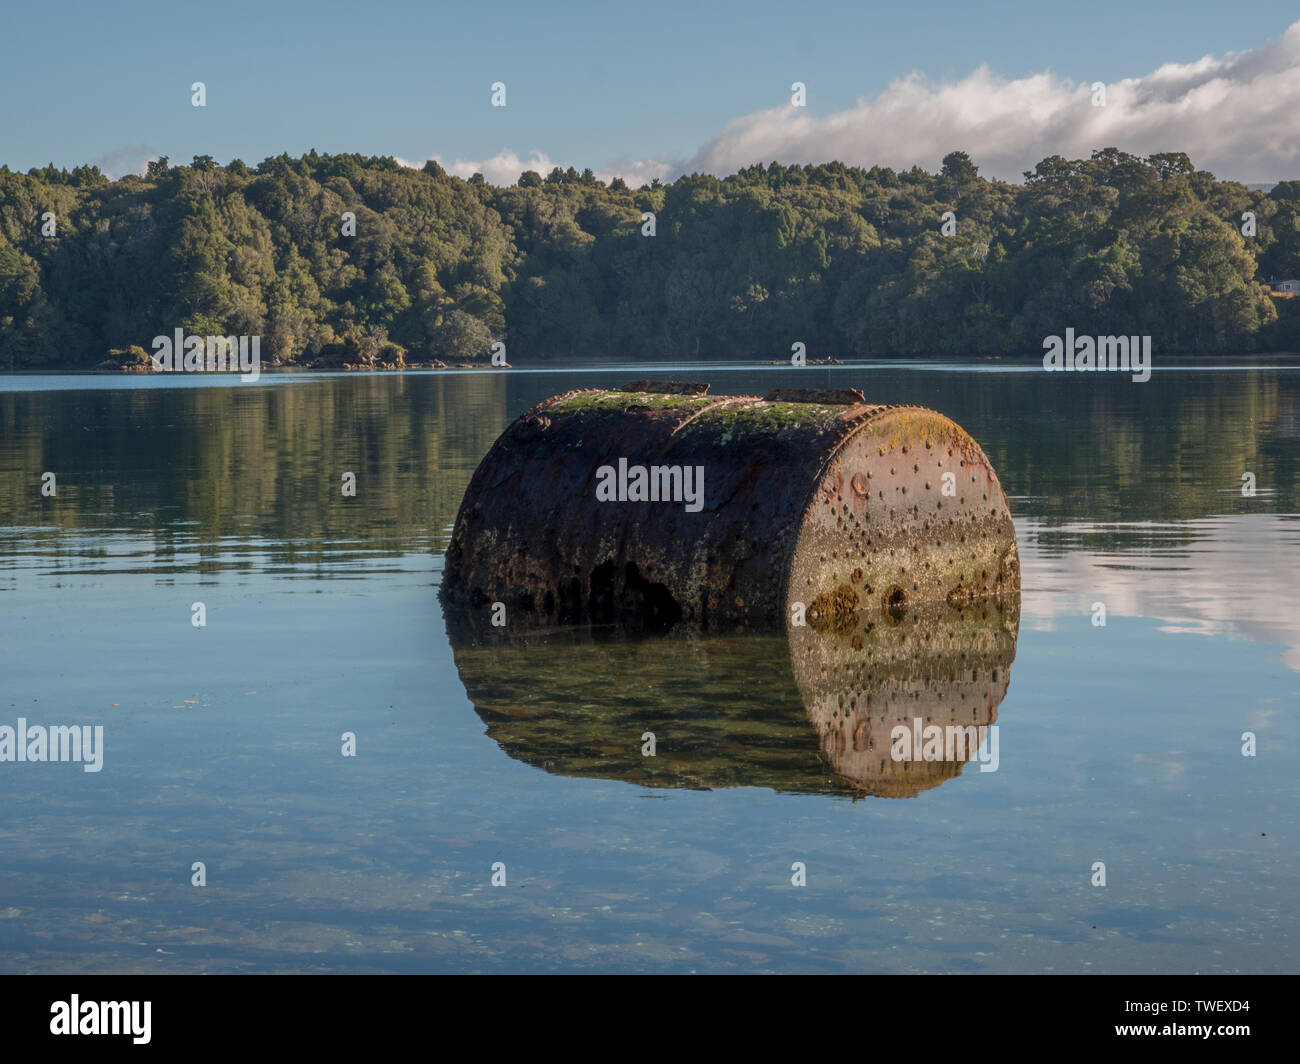 Abandonded chaudière à vapeur, à moitié immergés, reflétée dans l'eau claire, les baleiniers, Paterson Inlet, Rakiura Stewart Island, New Zealand Banque D'Images